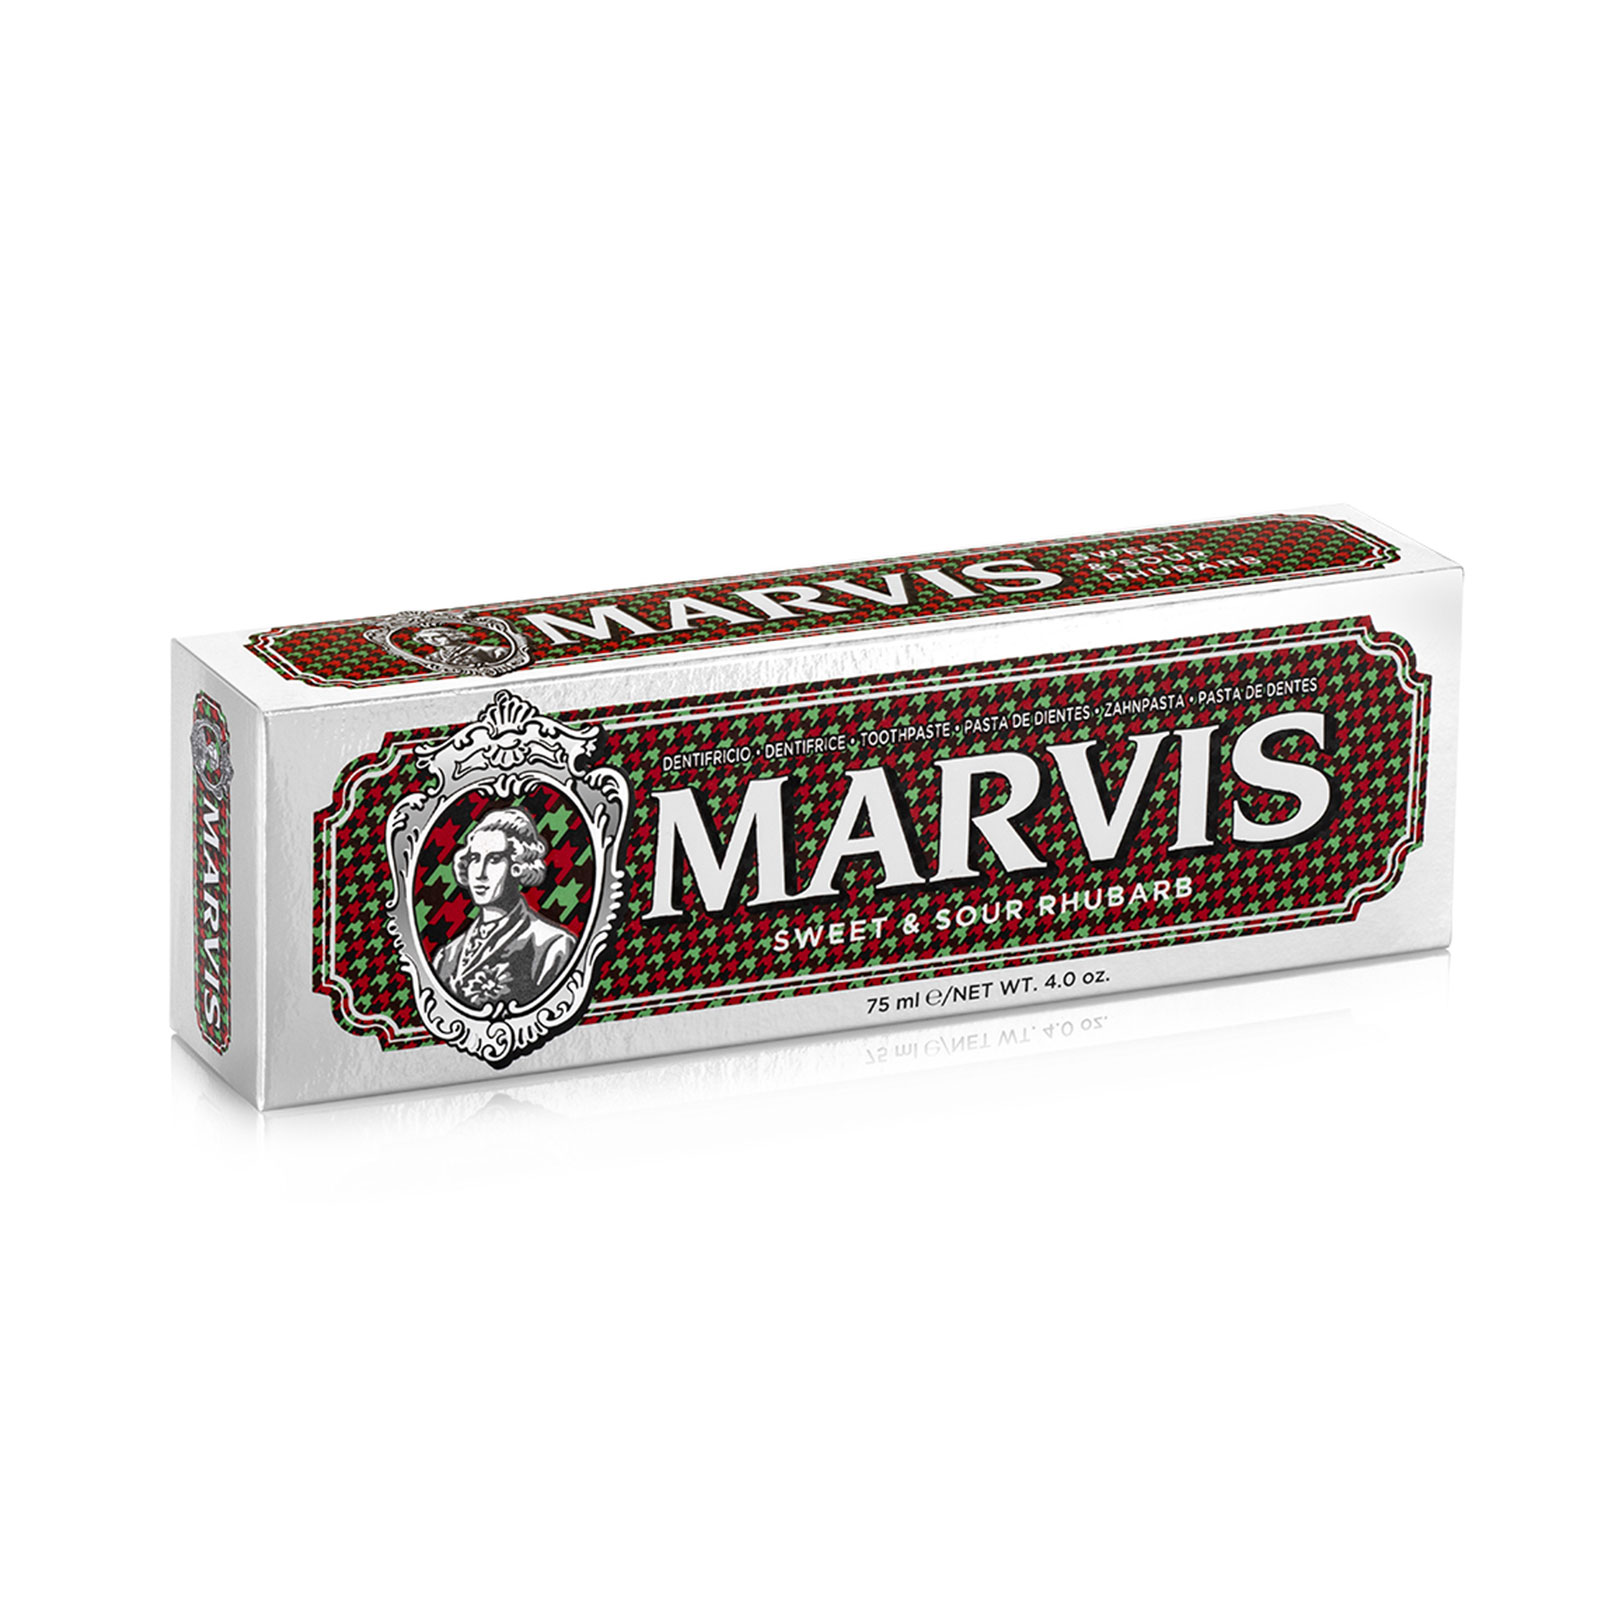 Зубная паста Marvis Sweet & Sour Rhubarb 75 ml.